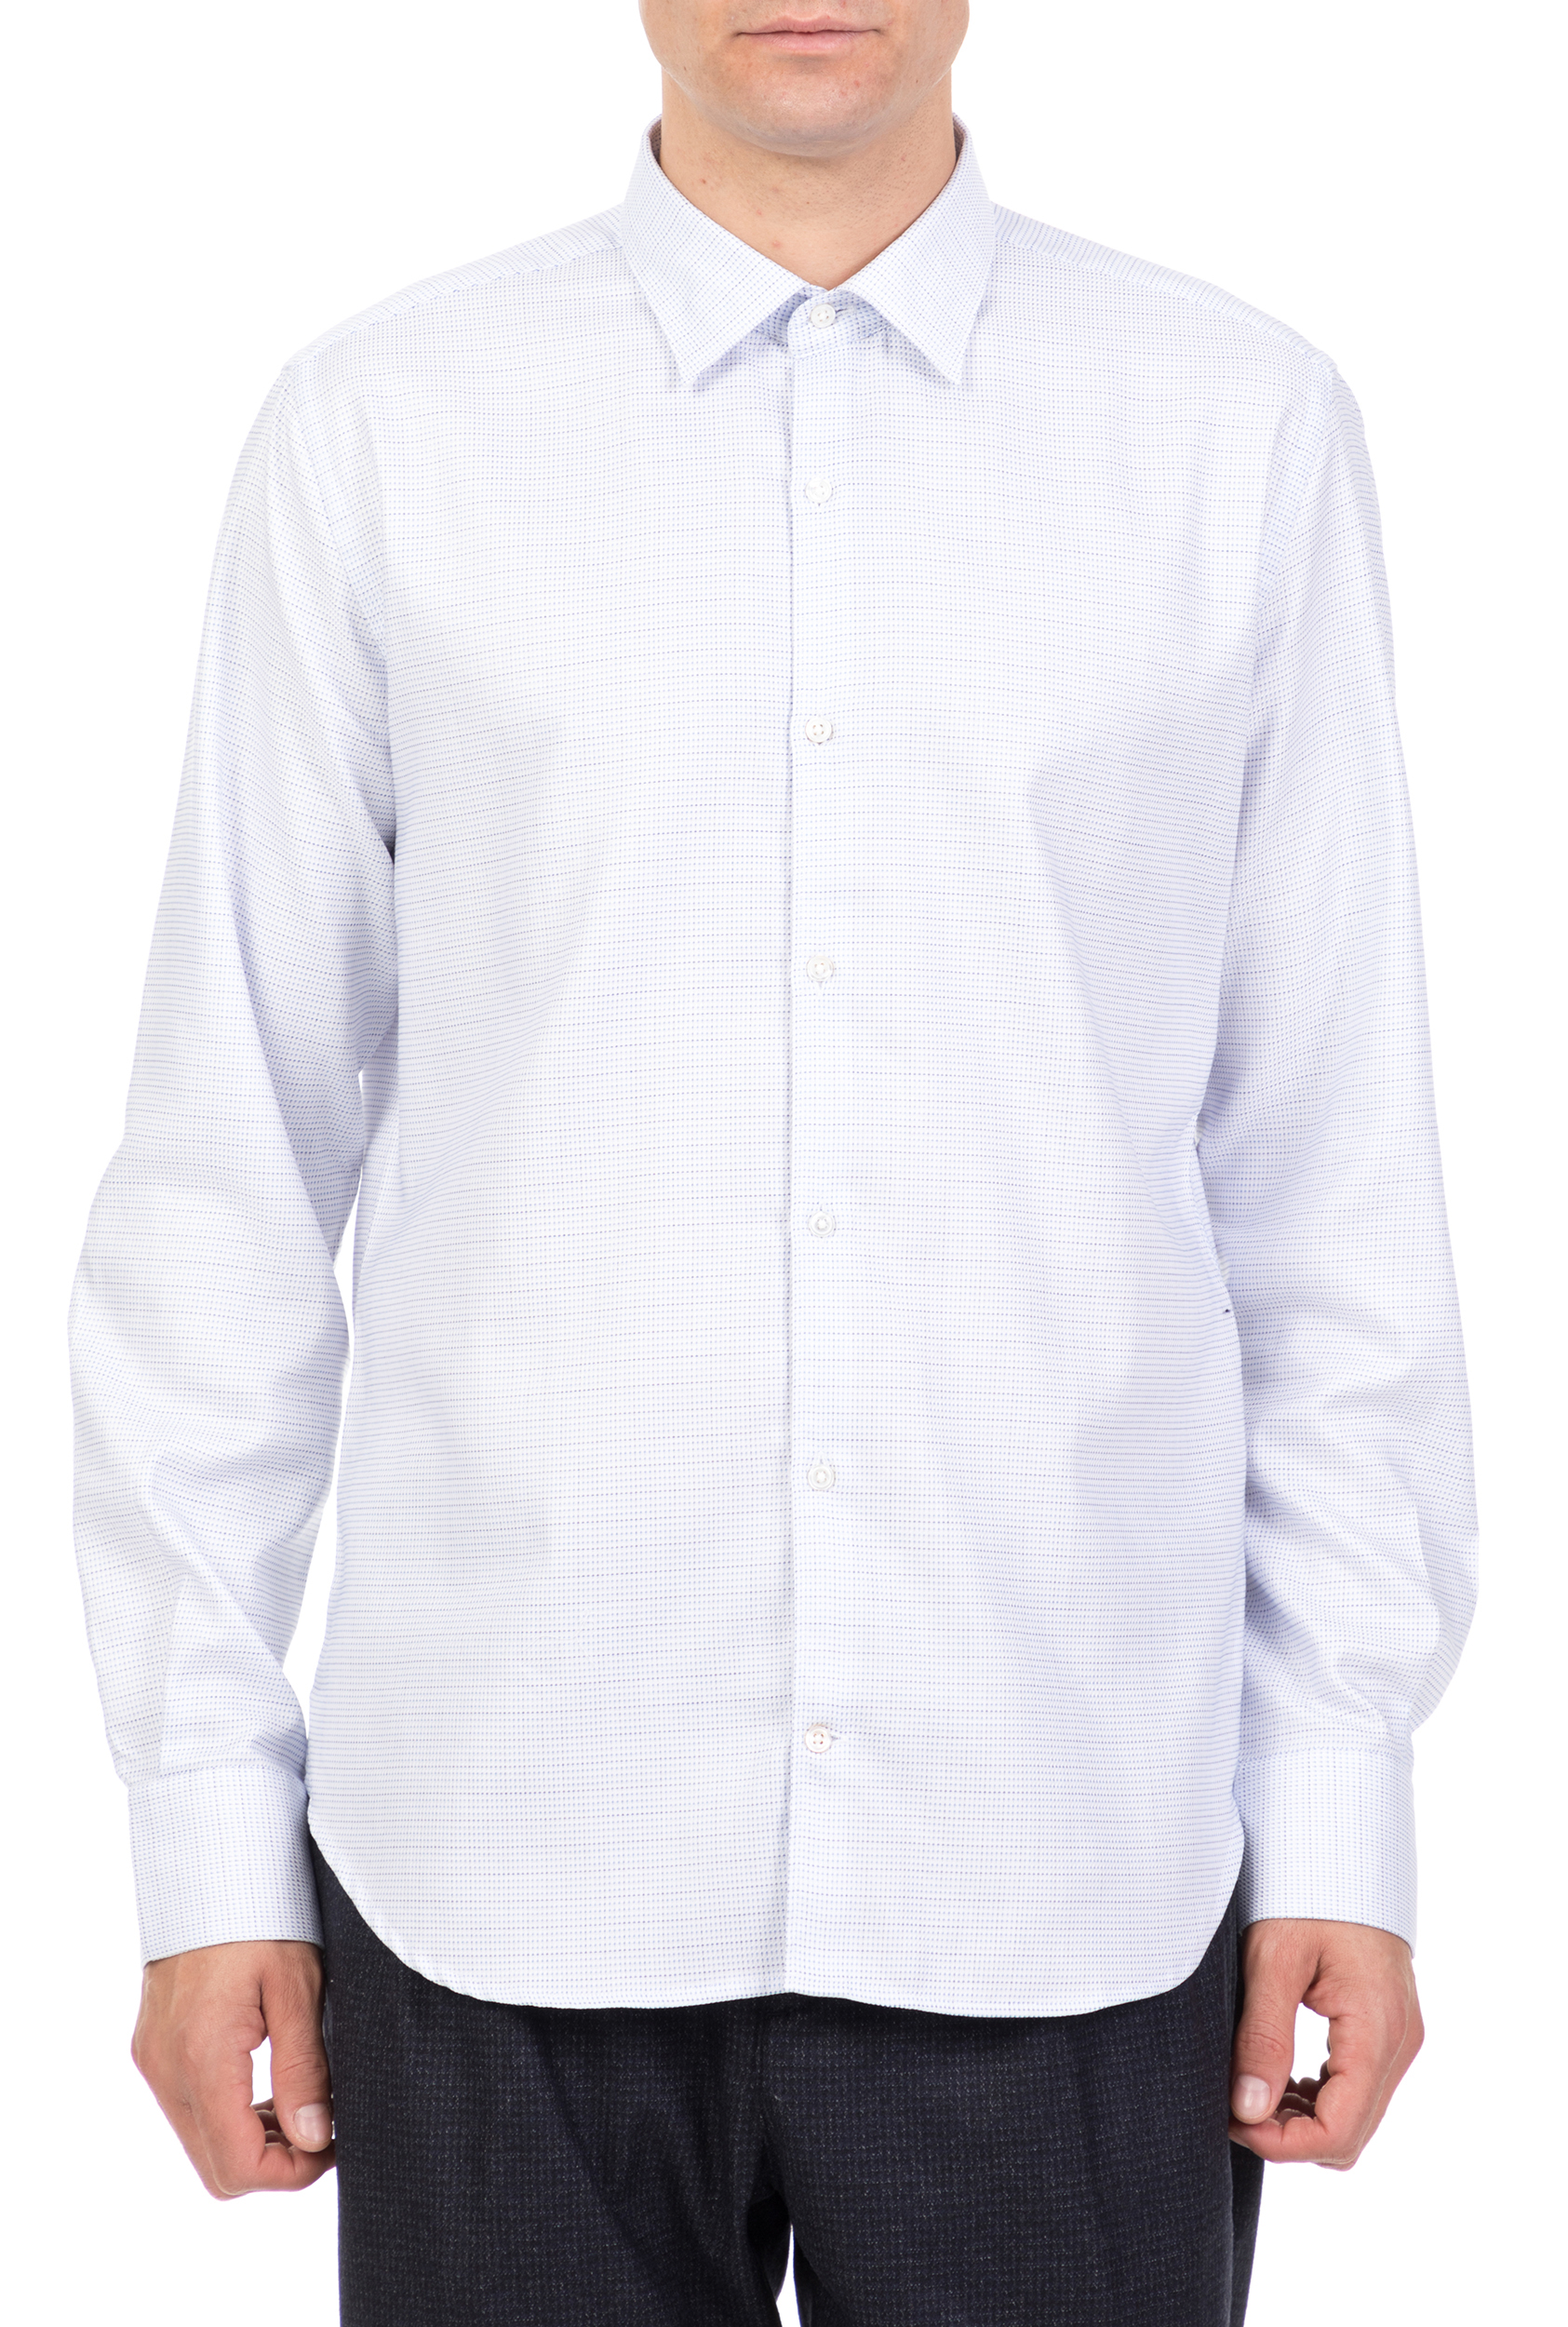 Ανδρικά/Ρούχα/Πουκάμισα/Μακρυμάνικα BROOKSFIELD - Ανδρικό μακρυμάνικο πουκάμισο BROOKSFIELD λευκό με print